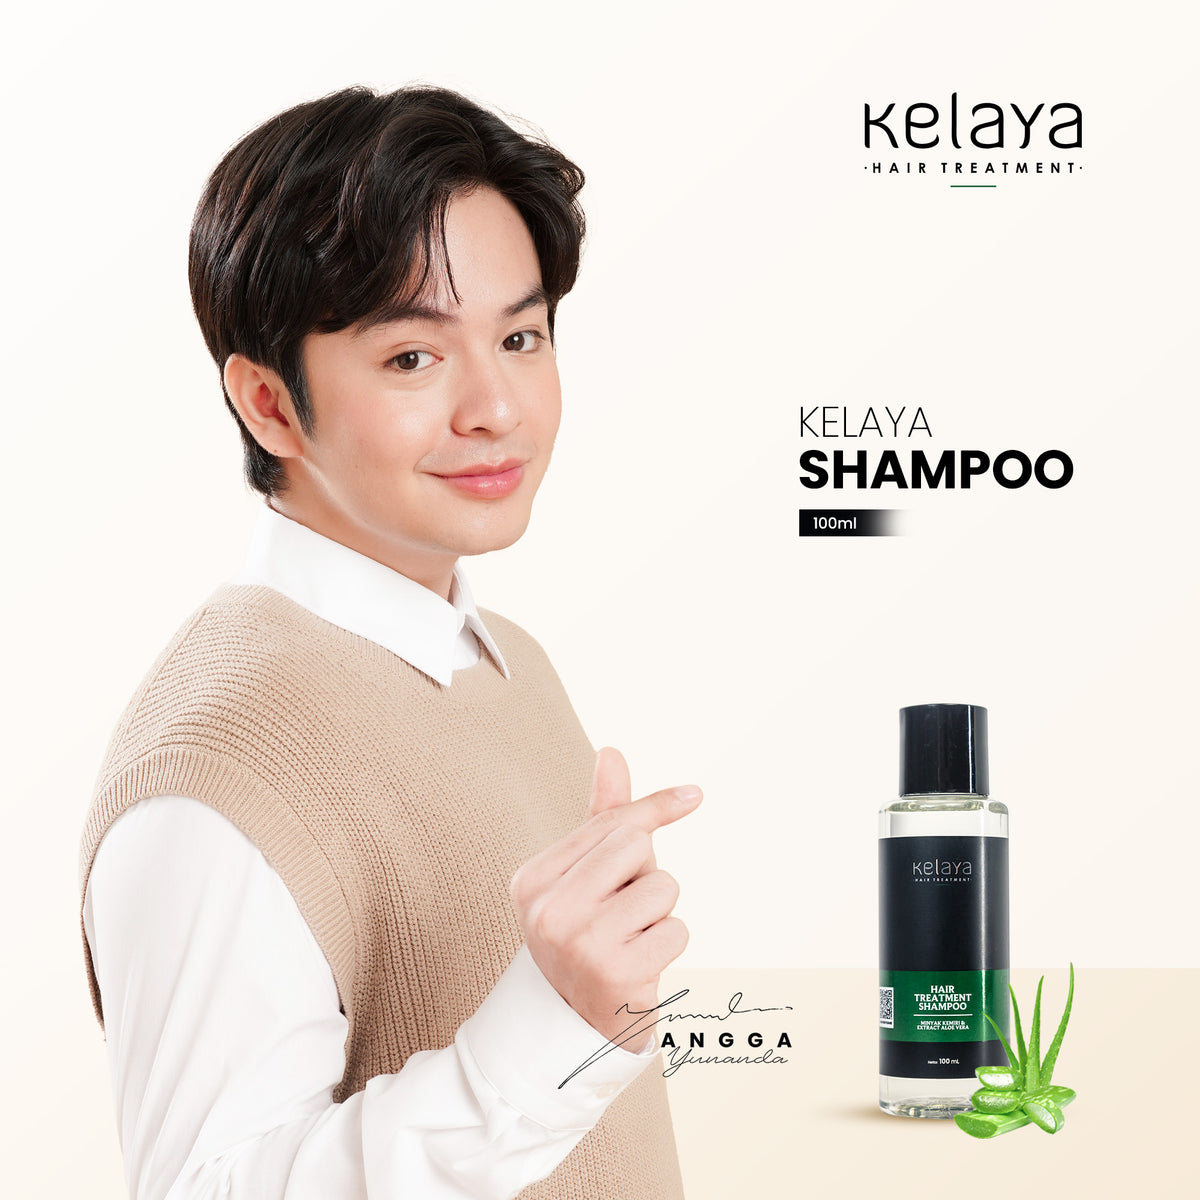 Kelaya Hair Treatment Shampoo 100 ml